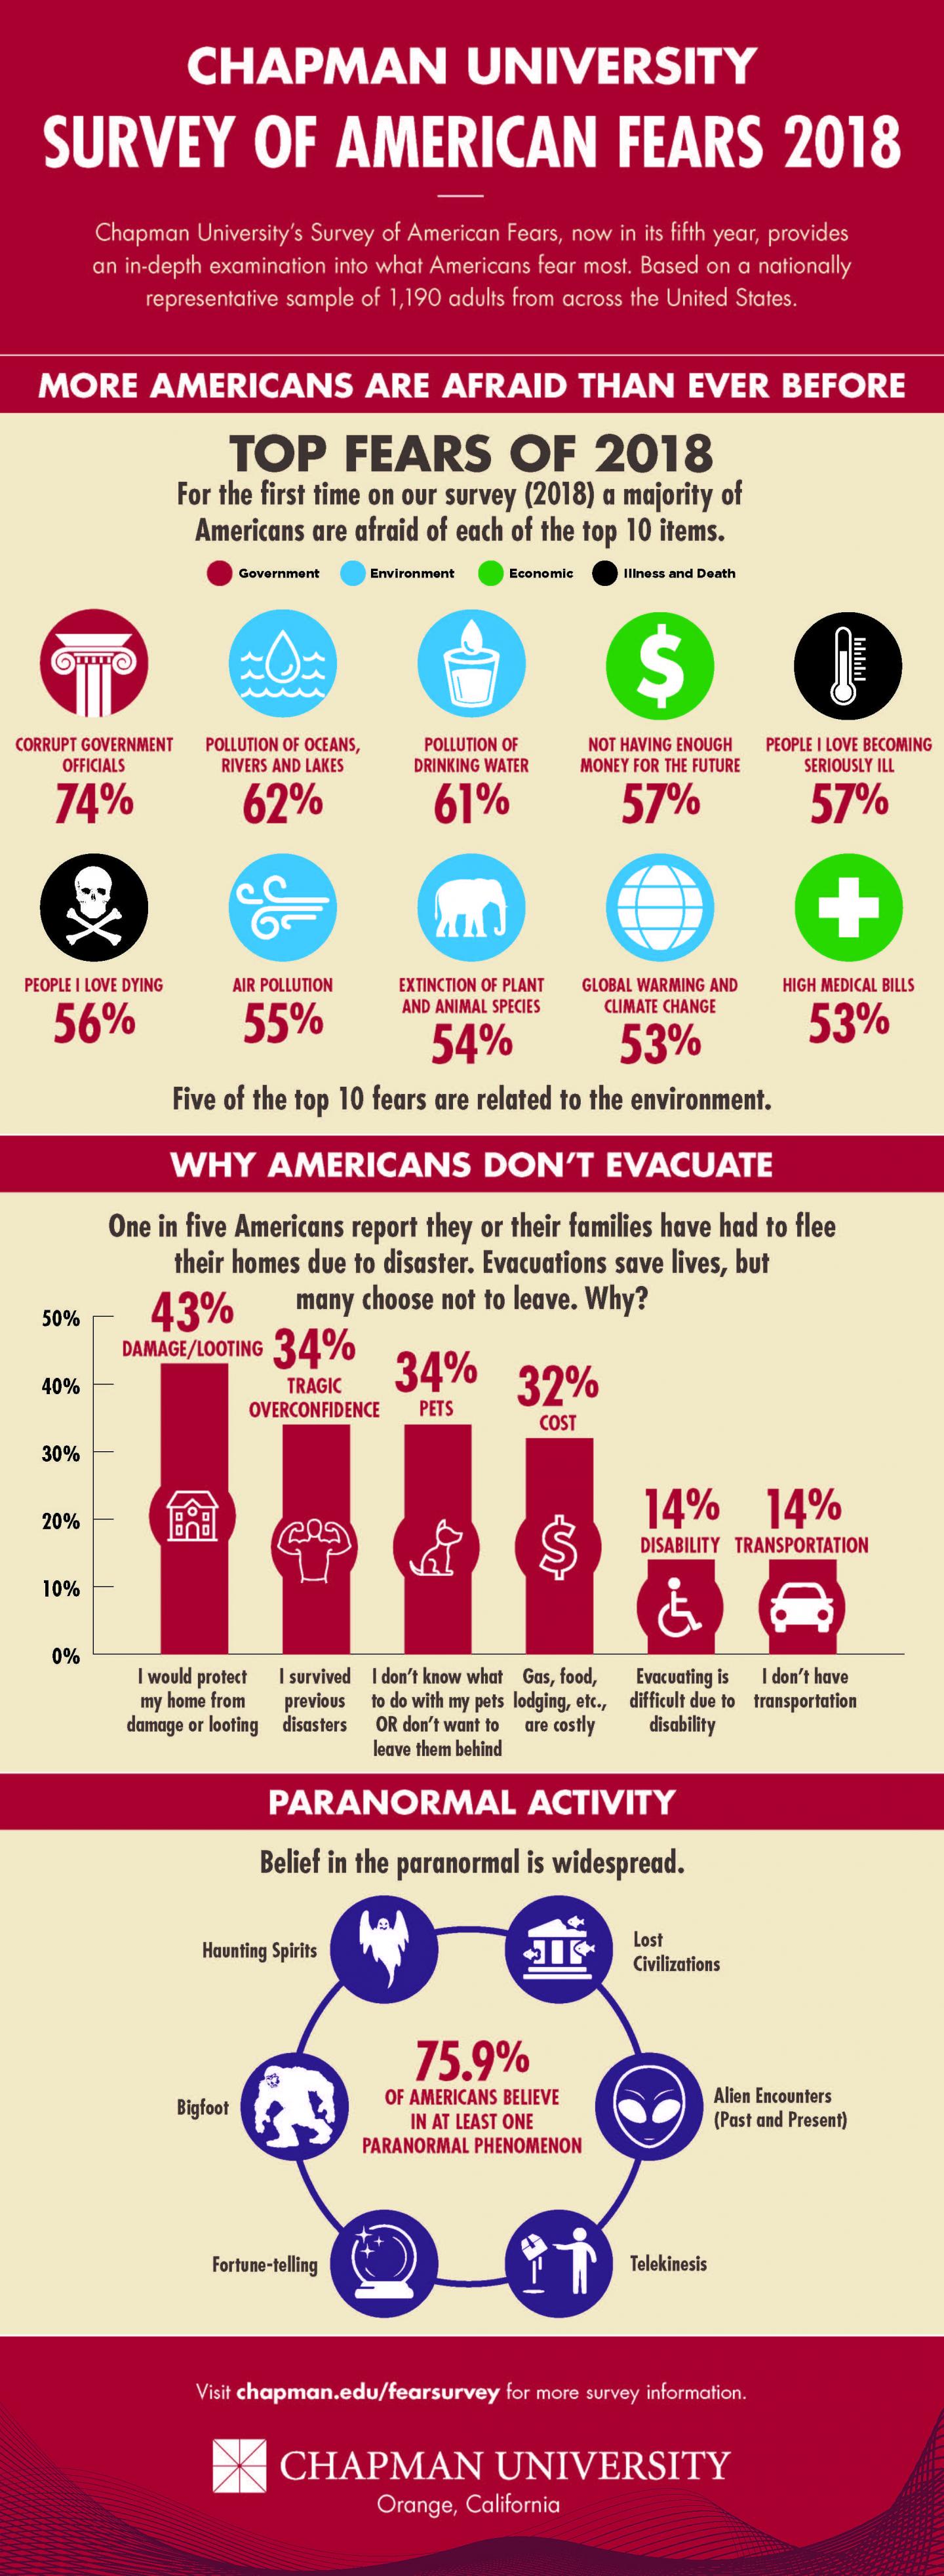 Chapman University Survey of American Fears